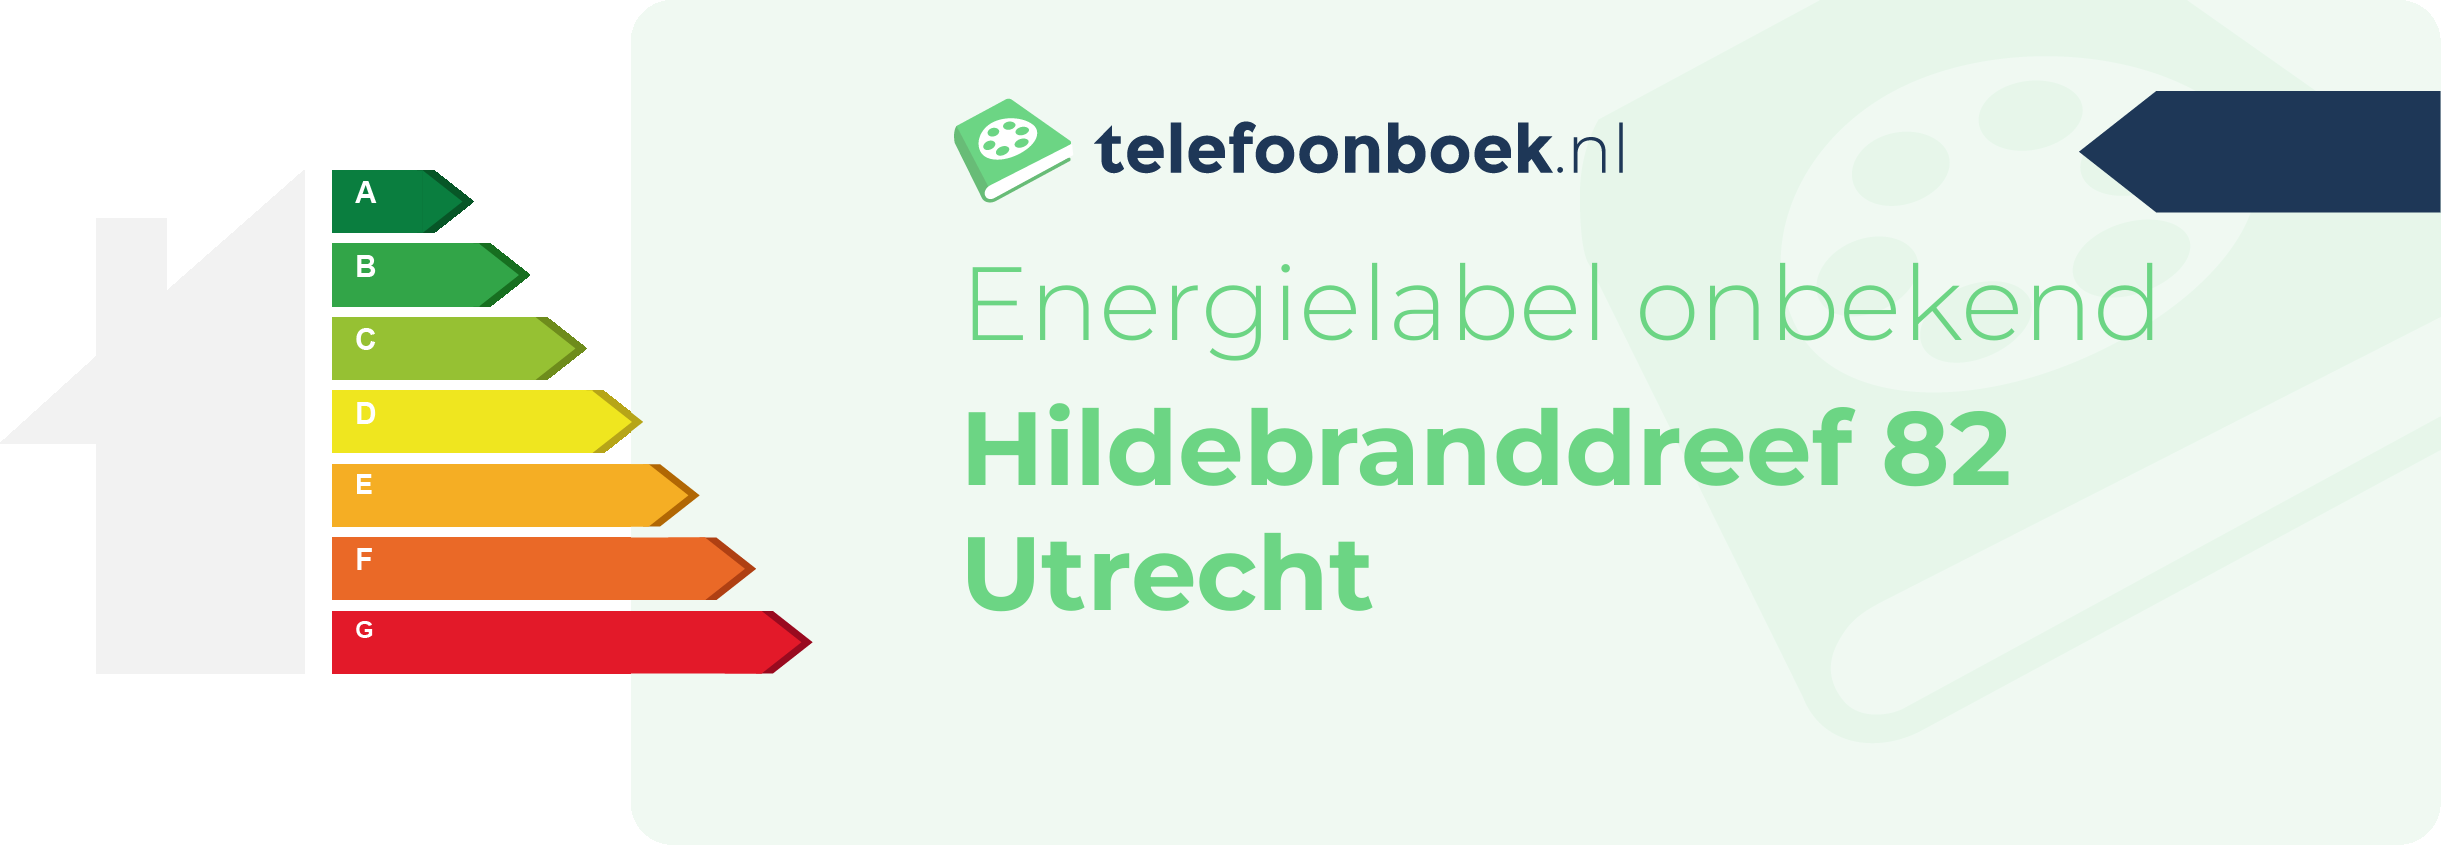 Energielabel Hildebranddreef 82 Utrecht